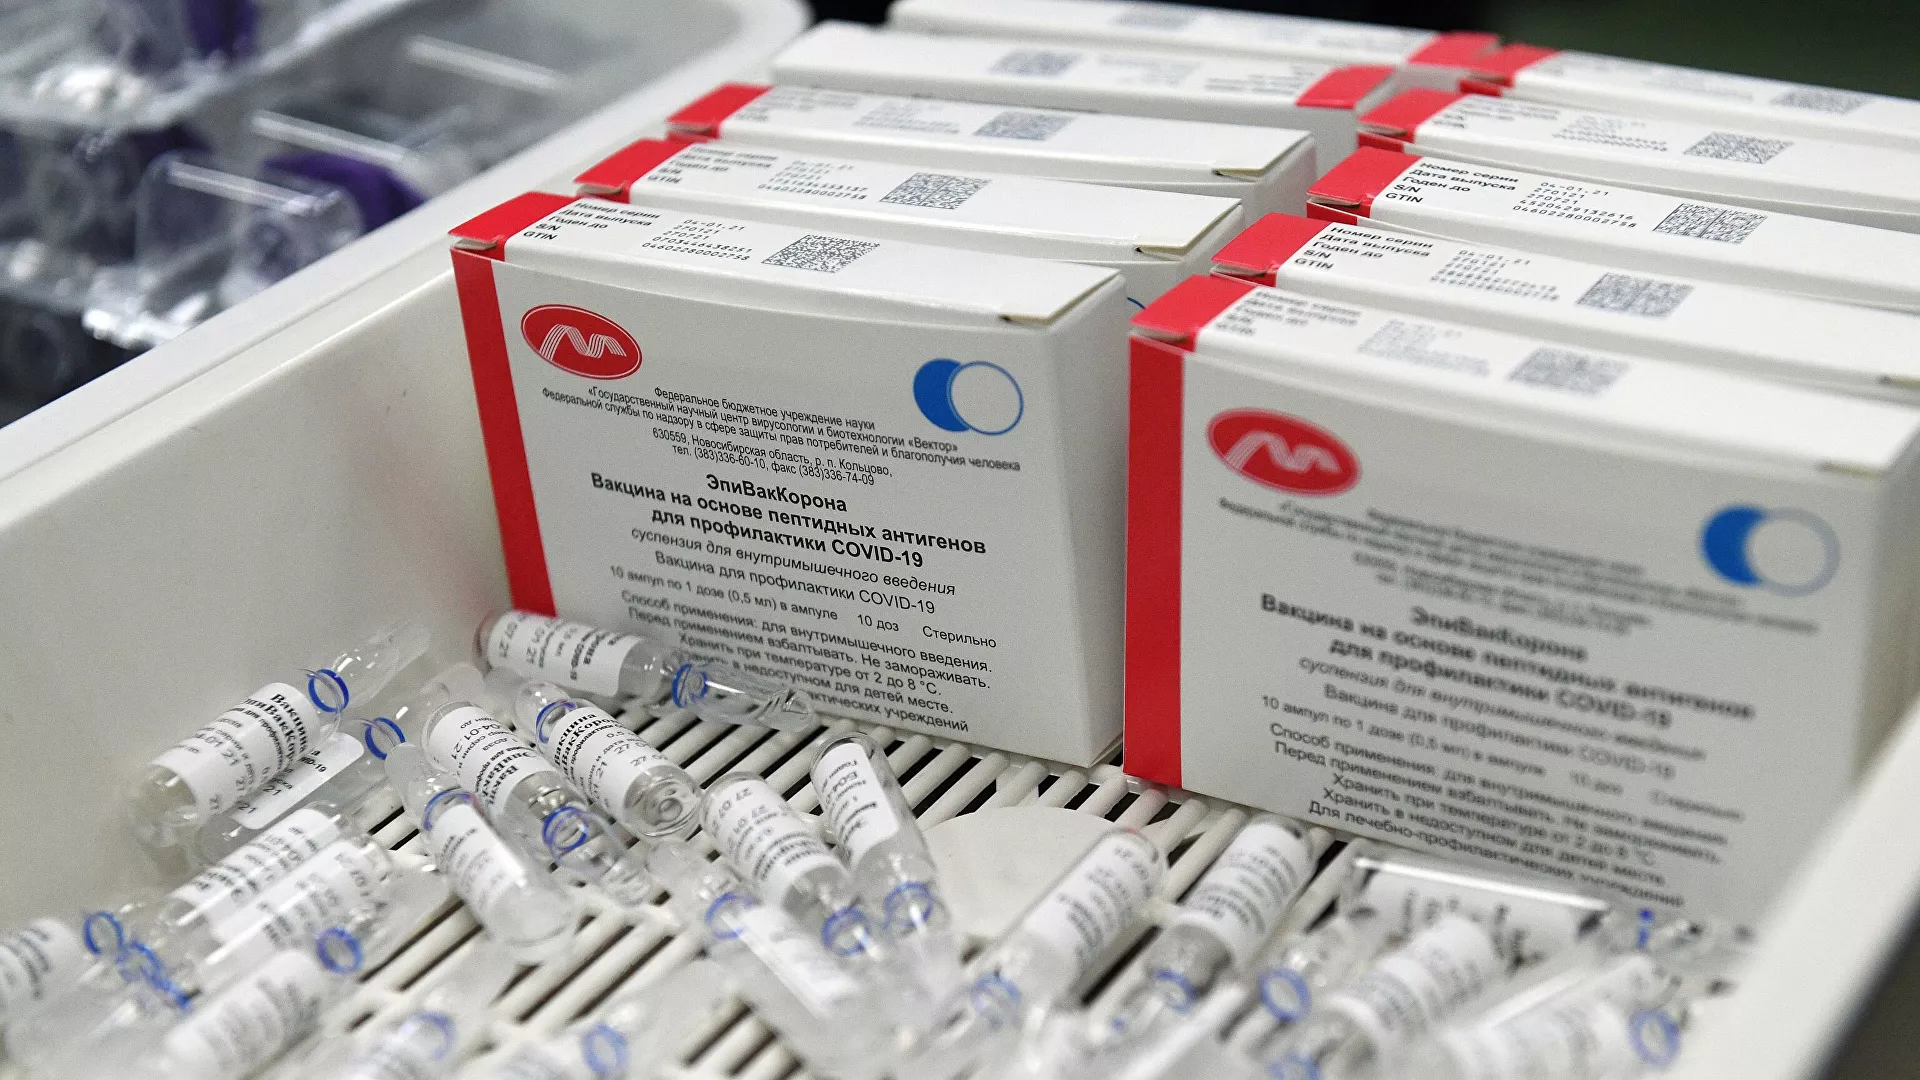 واکسن دوم کرونا در روسیه «استنشاقی» تولید شد